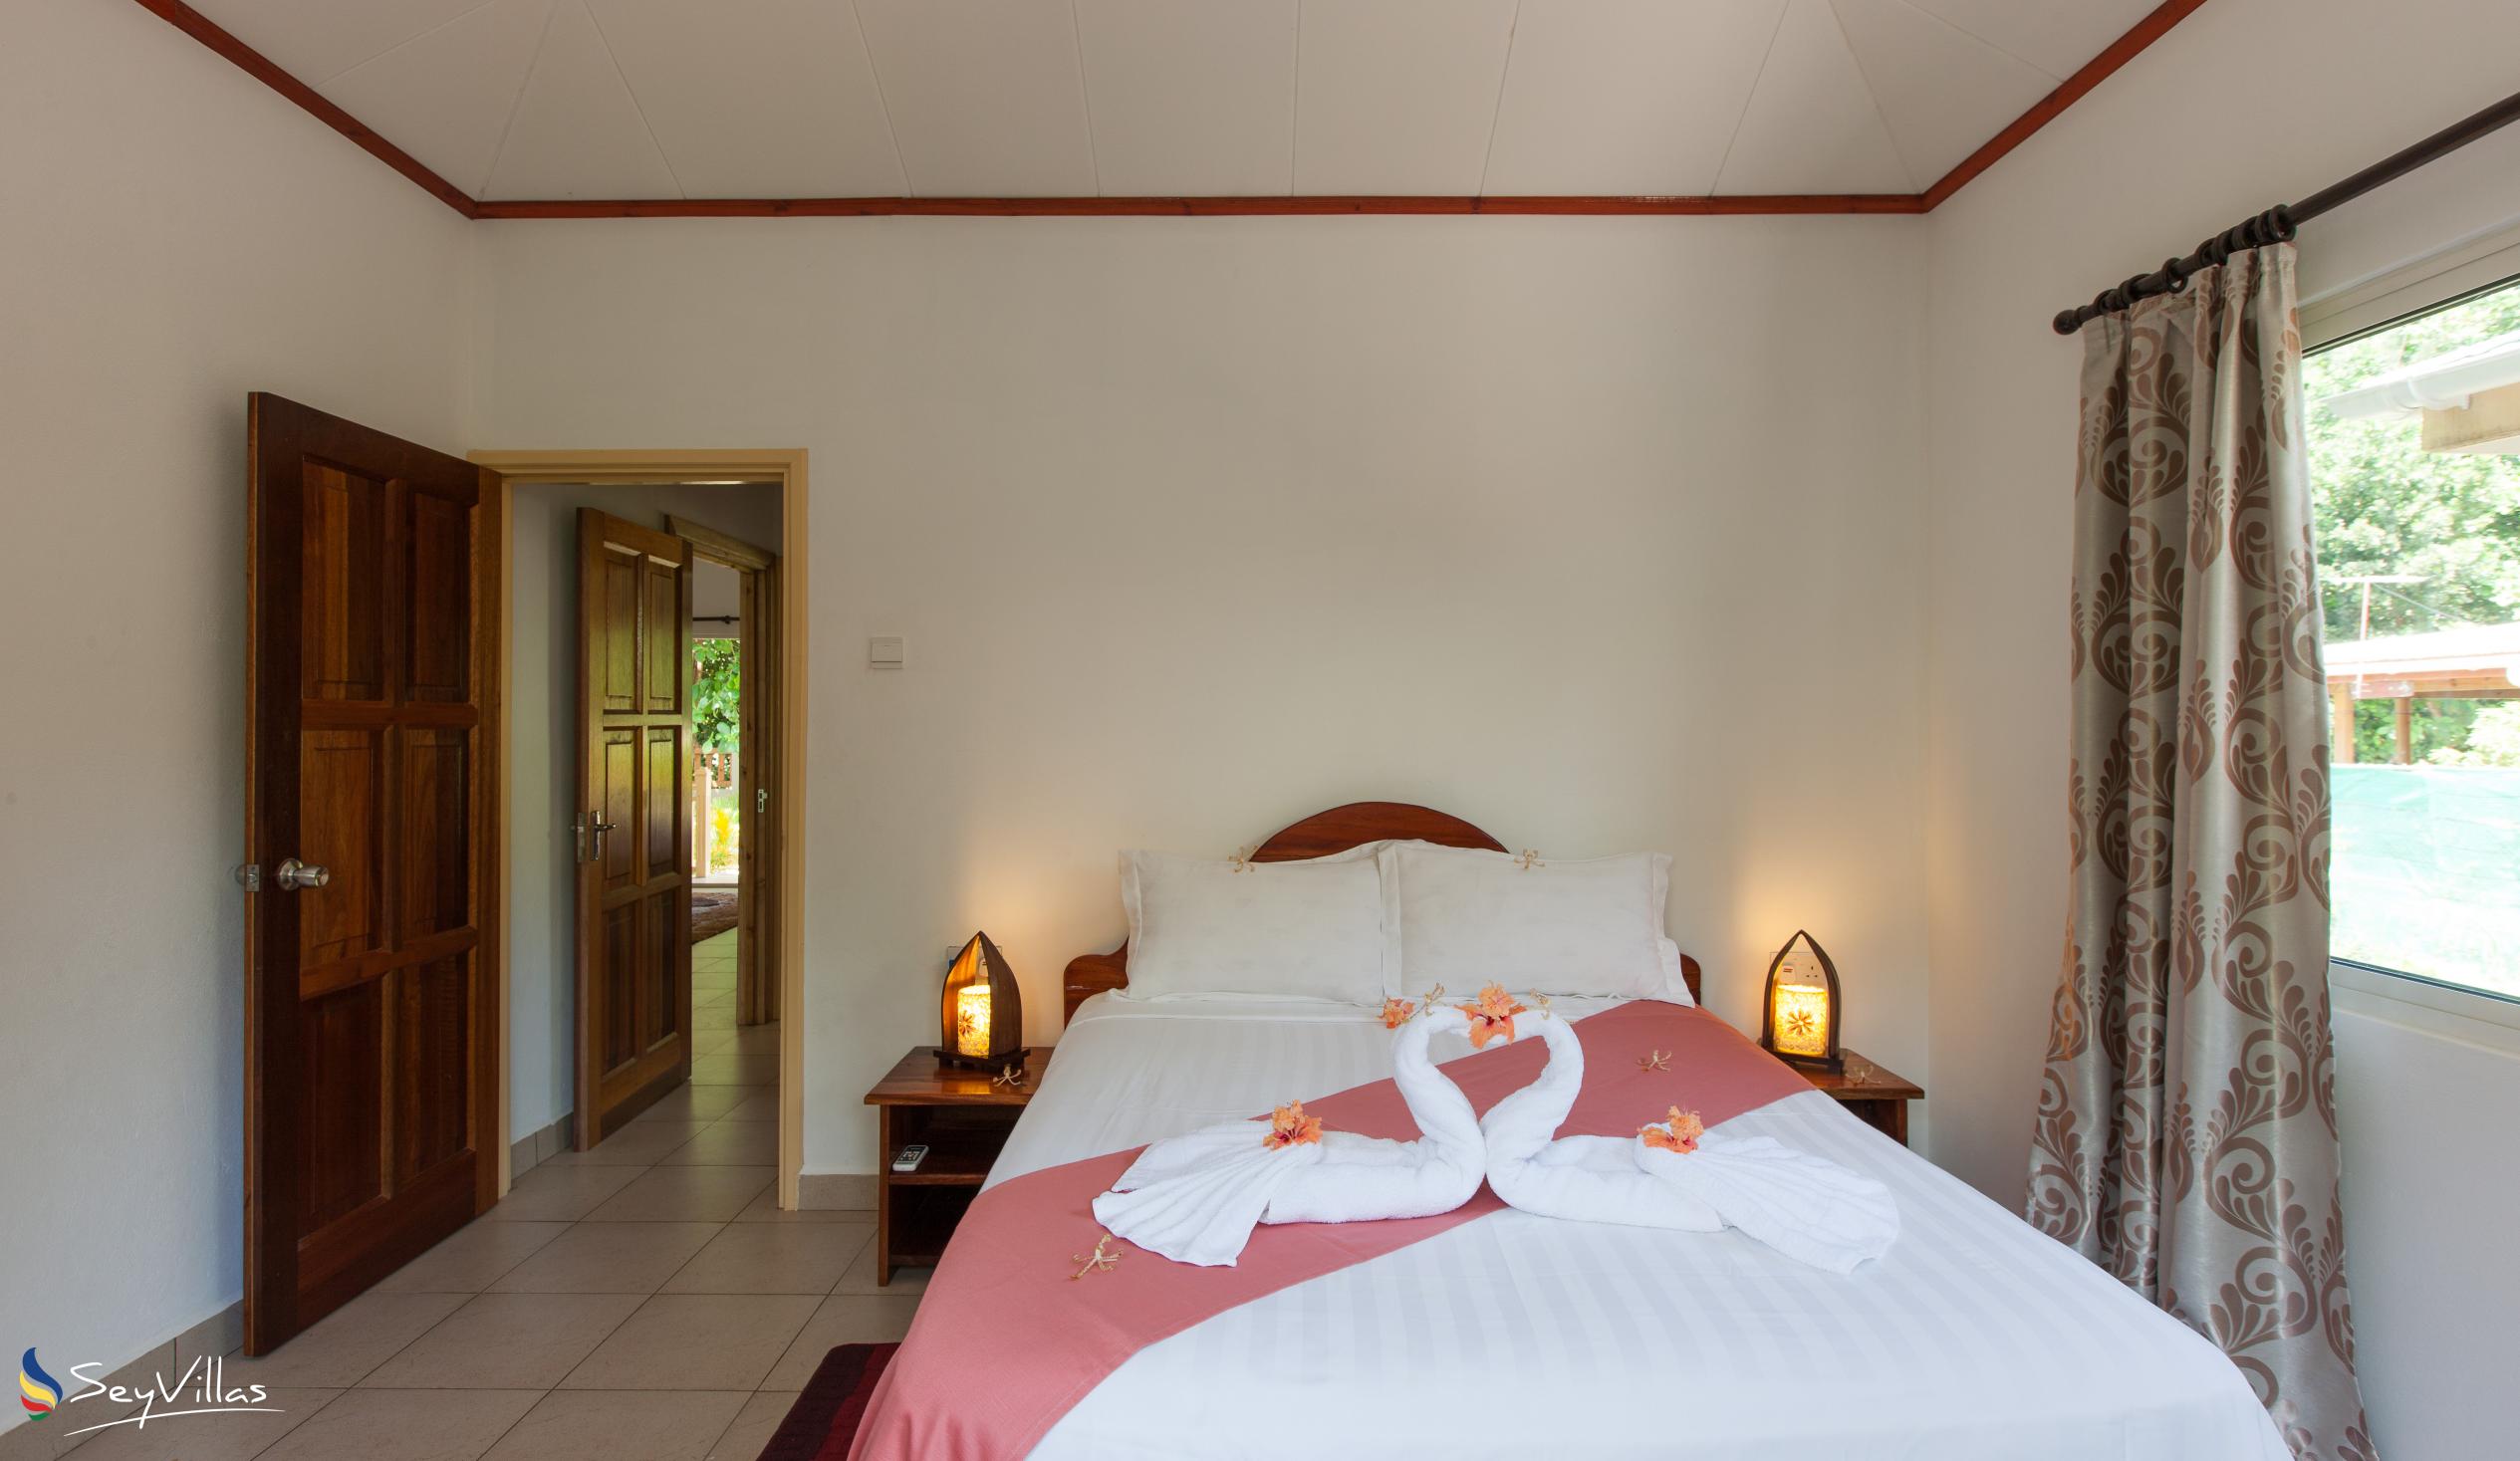 Photo 25: Hostellerie La Digue - 3-Bedroom Chalet - La Digue (Seychelles)